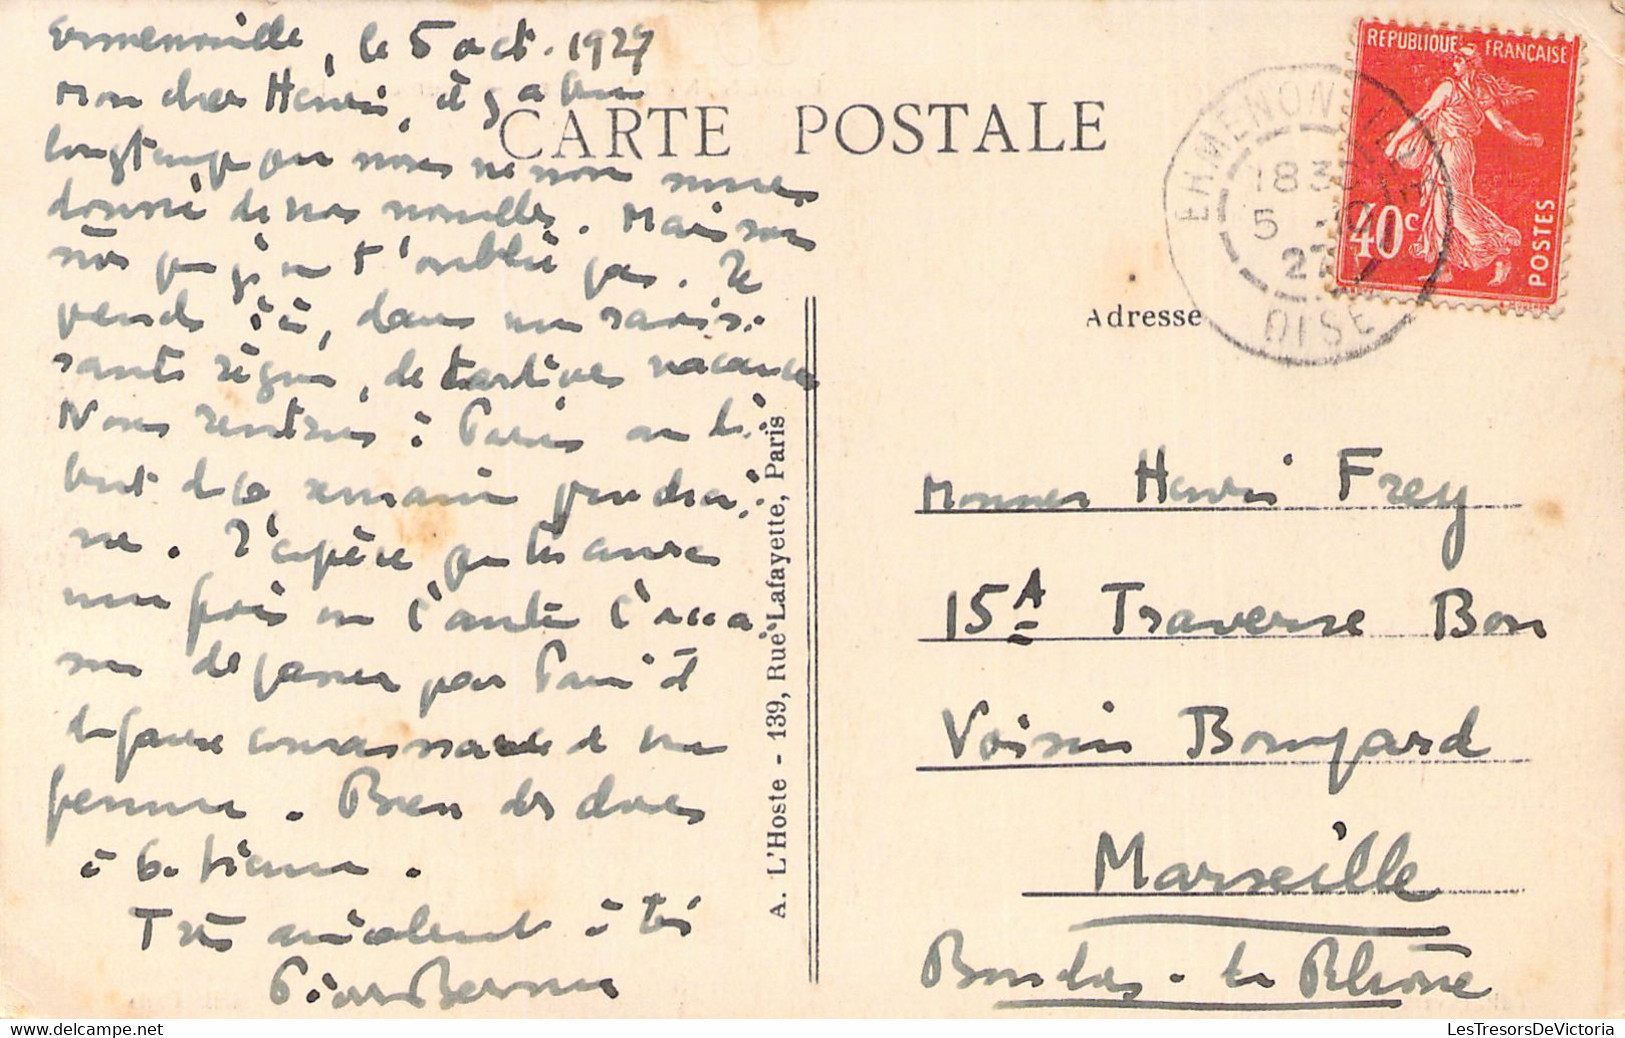 FRANCE - 60 - ERMENONVILLE - Mer De Sable - Edit Pavard - Carte Postale Ancienne - Ermenonville